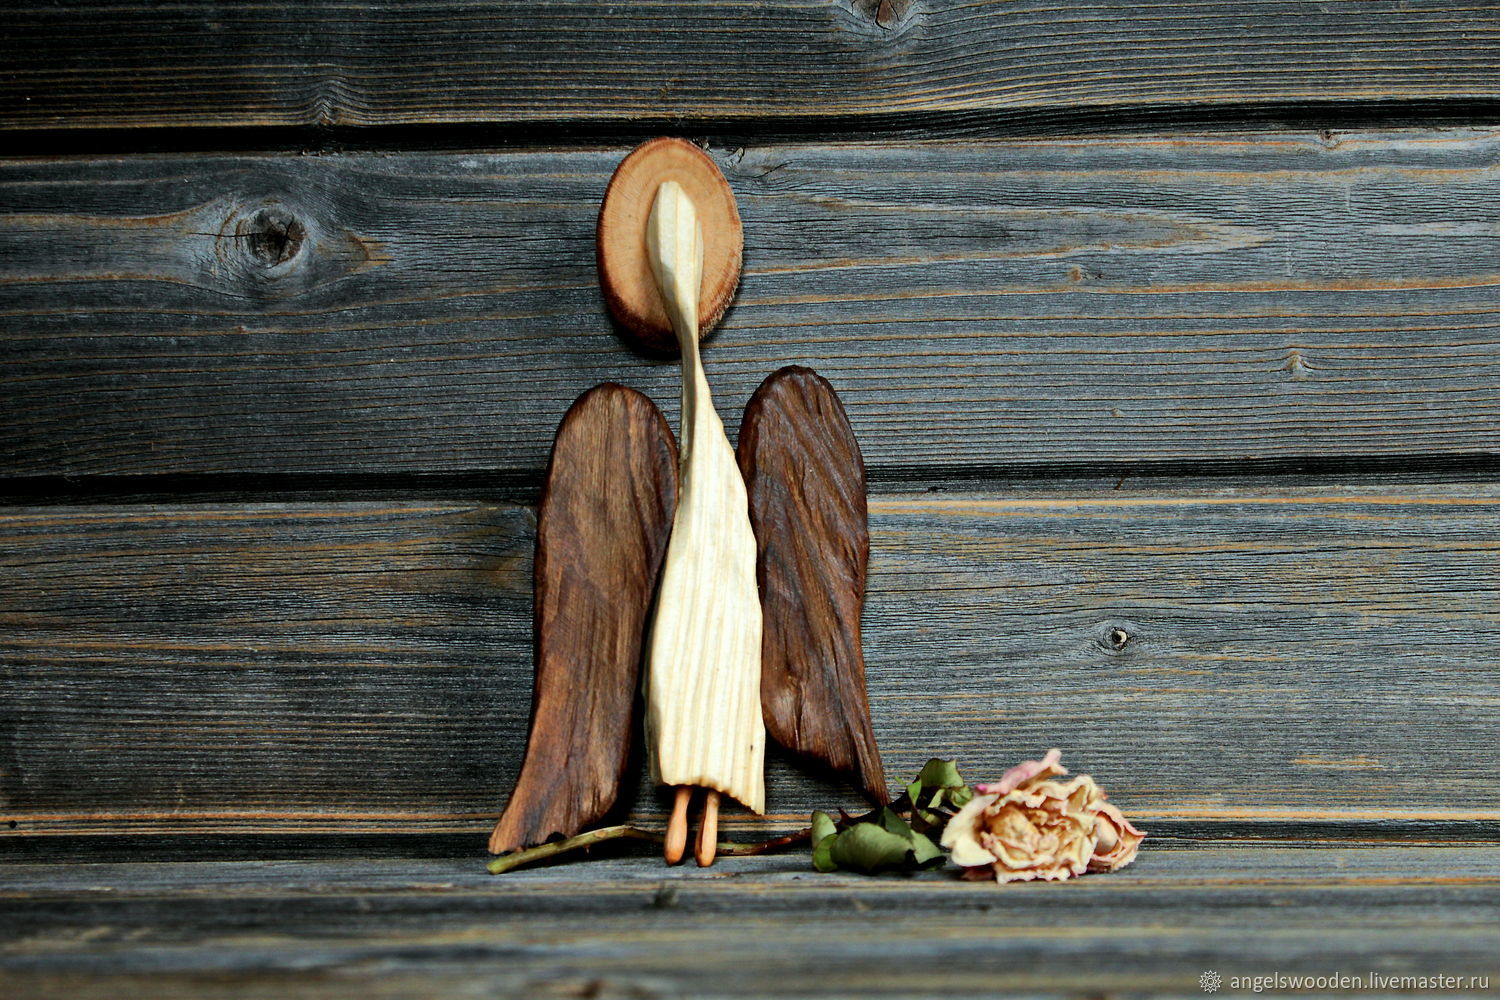 Statuette.Guardian angel of a girl's heart.Wooden figure. в интернет-м...